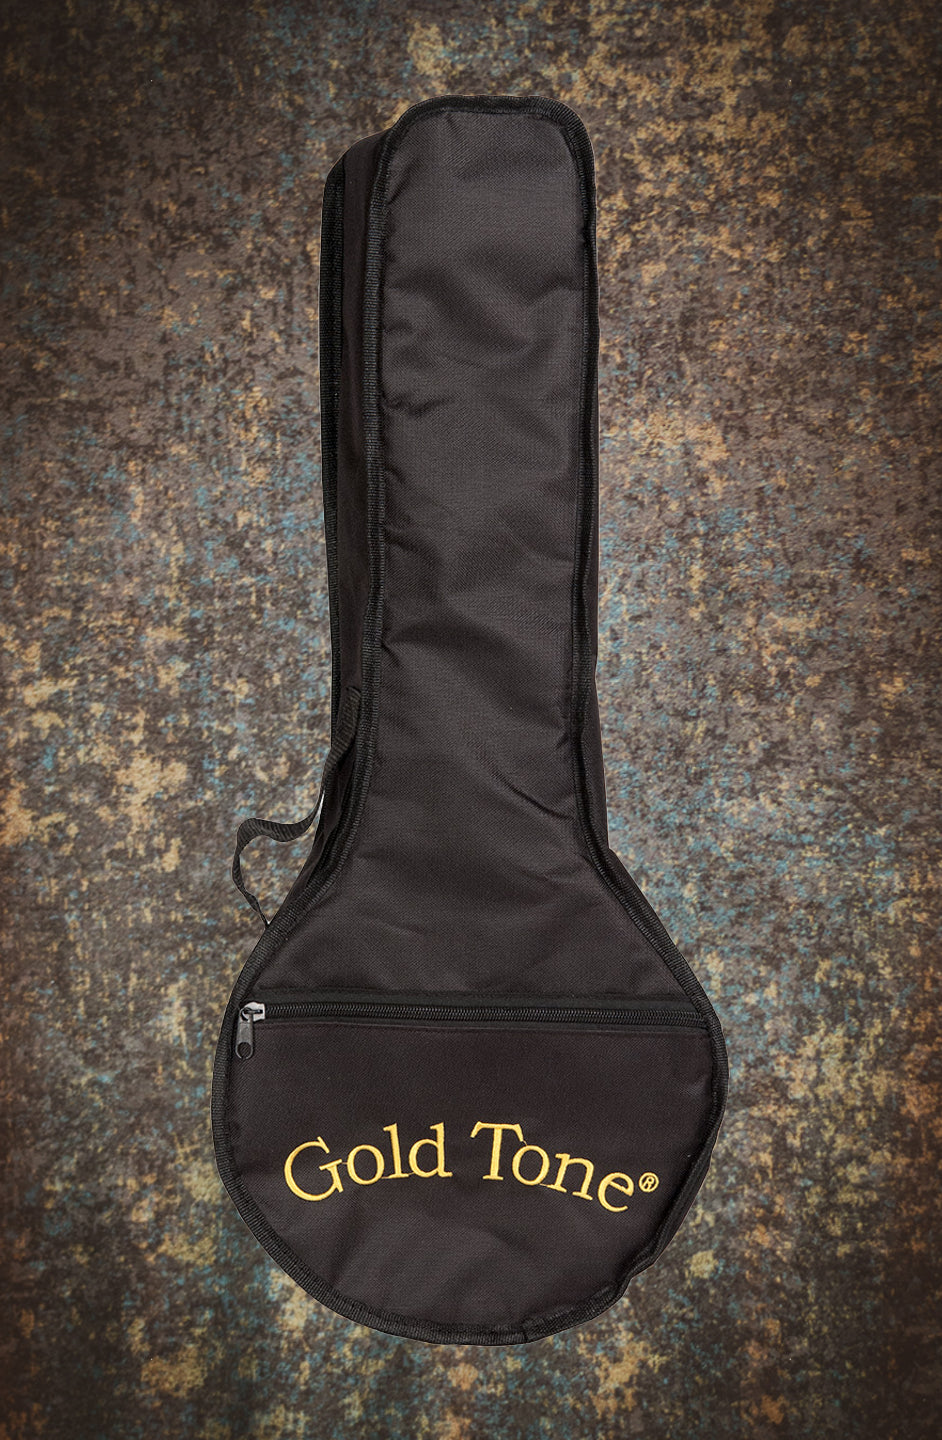 Gold Tone Little Gem Light-up Banjolele